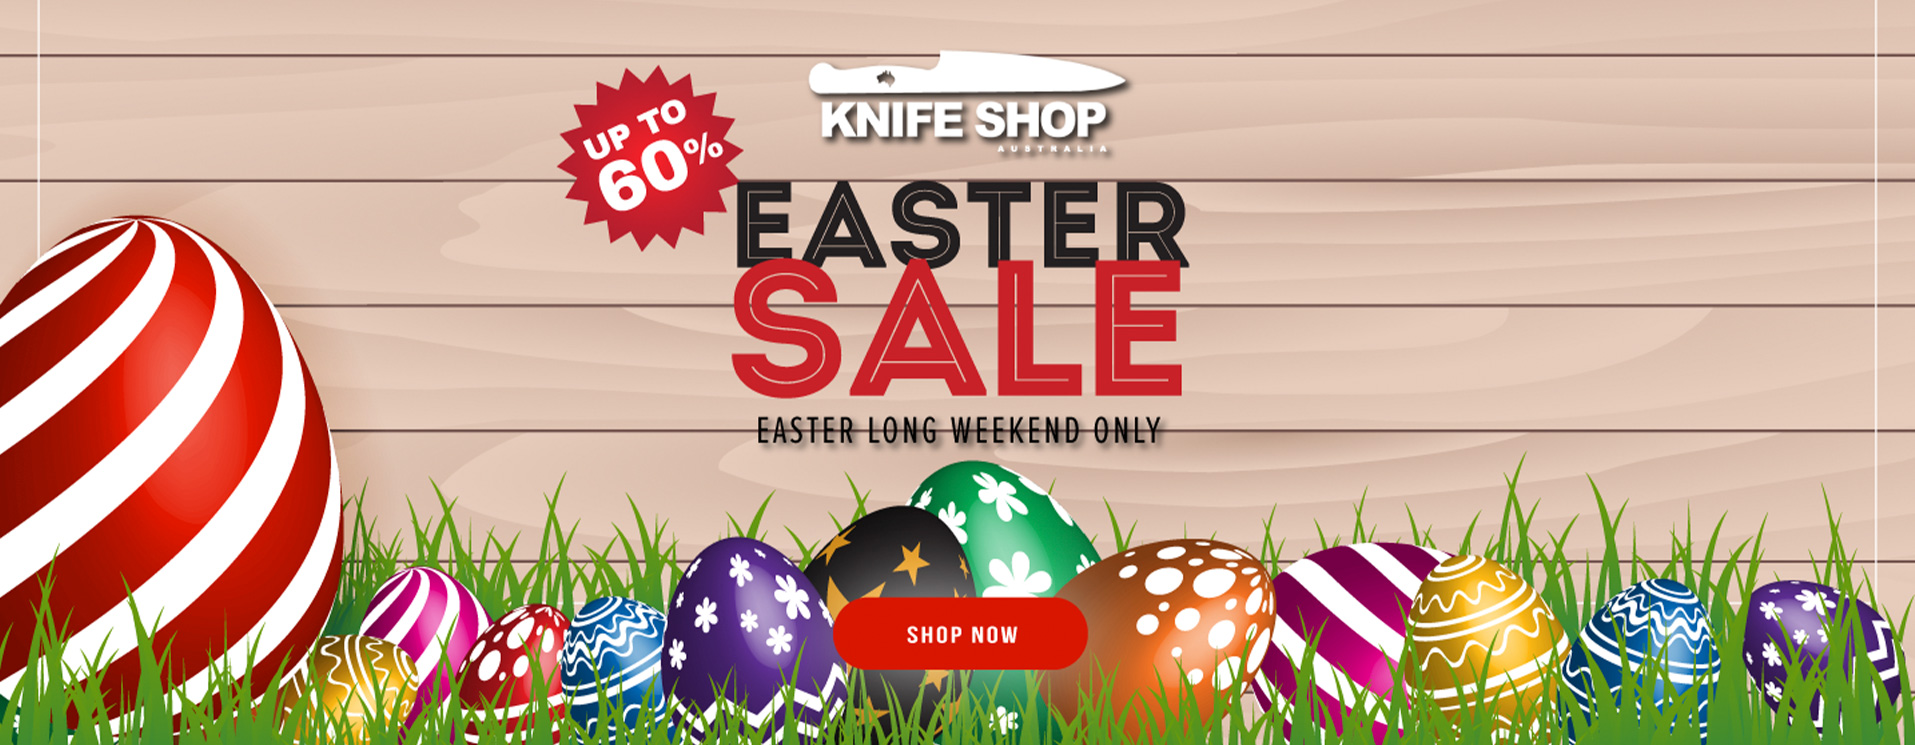 Easter Flash Sale Alert! 